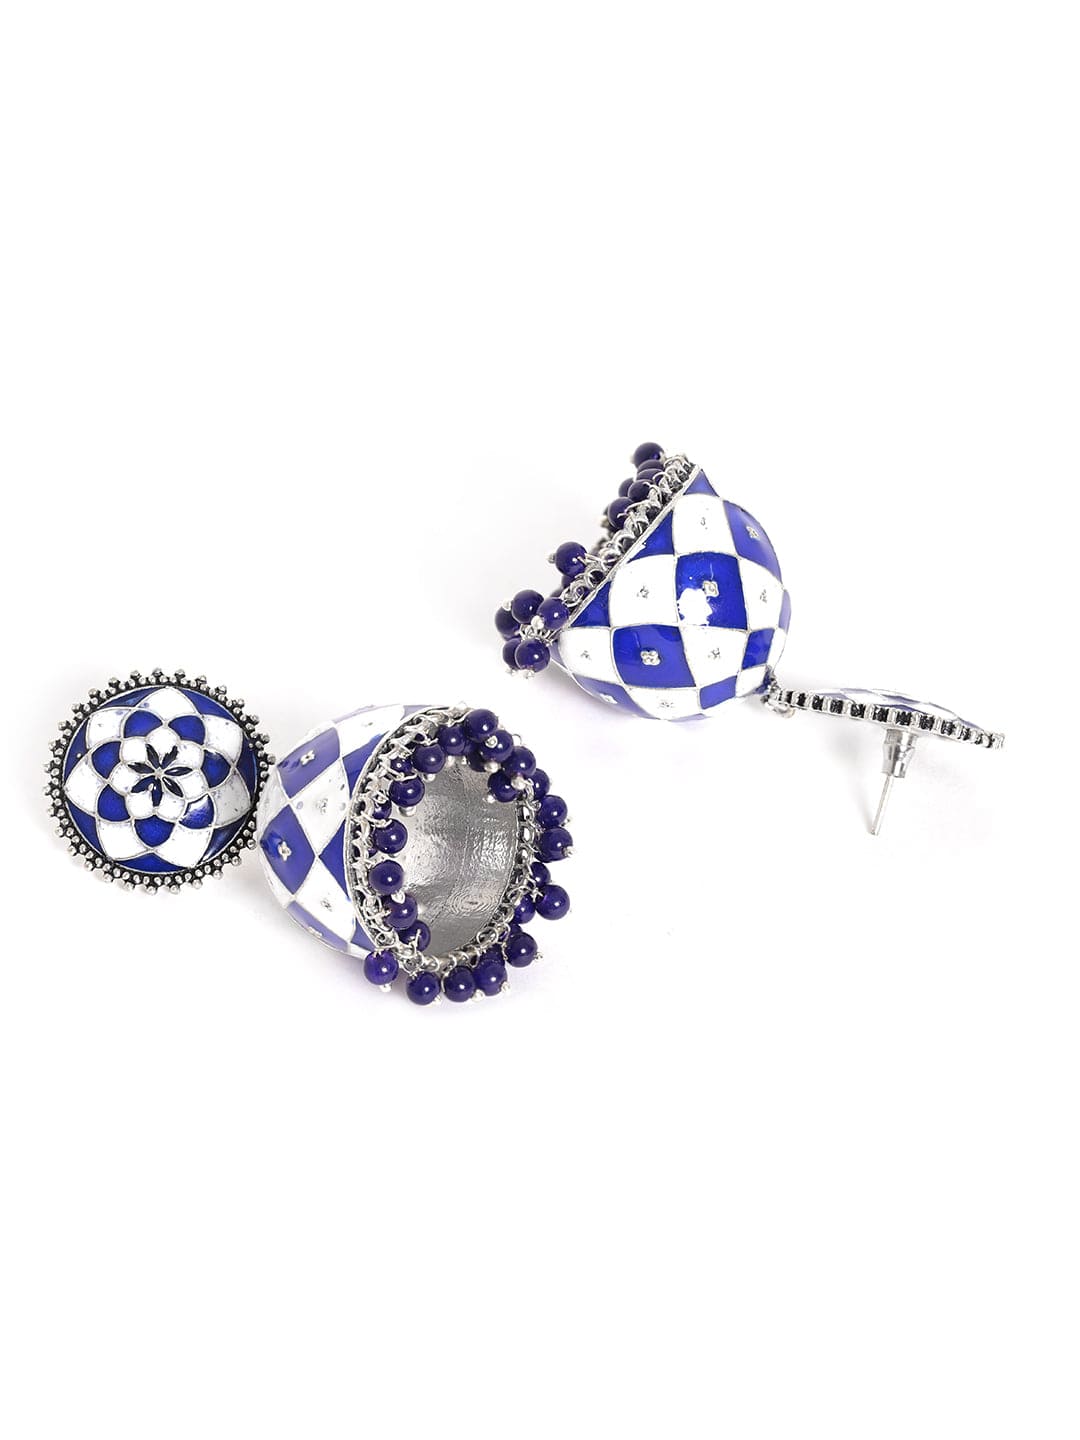 Rubans Oxidized silver Blue & White enamel Blue beaded Statement Jhumka Earrings Earrings